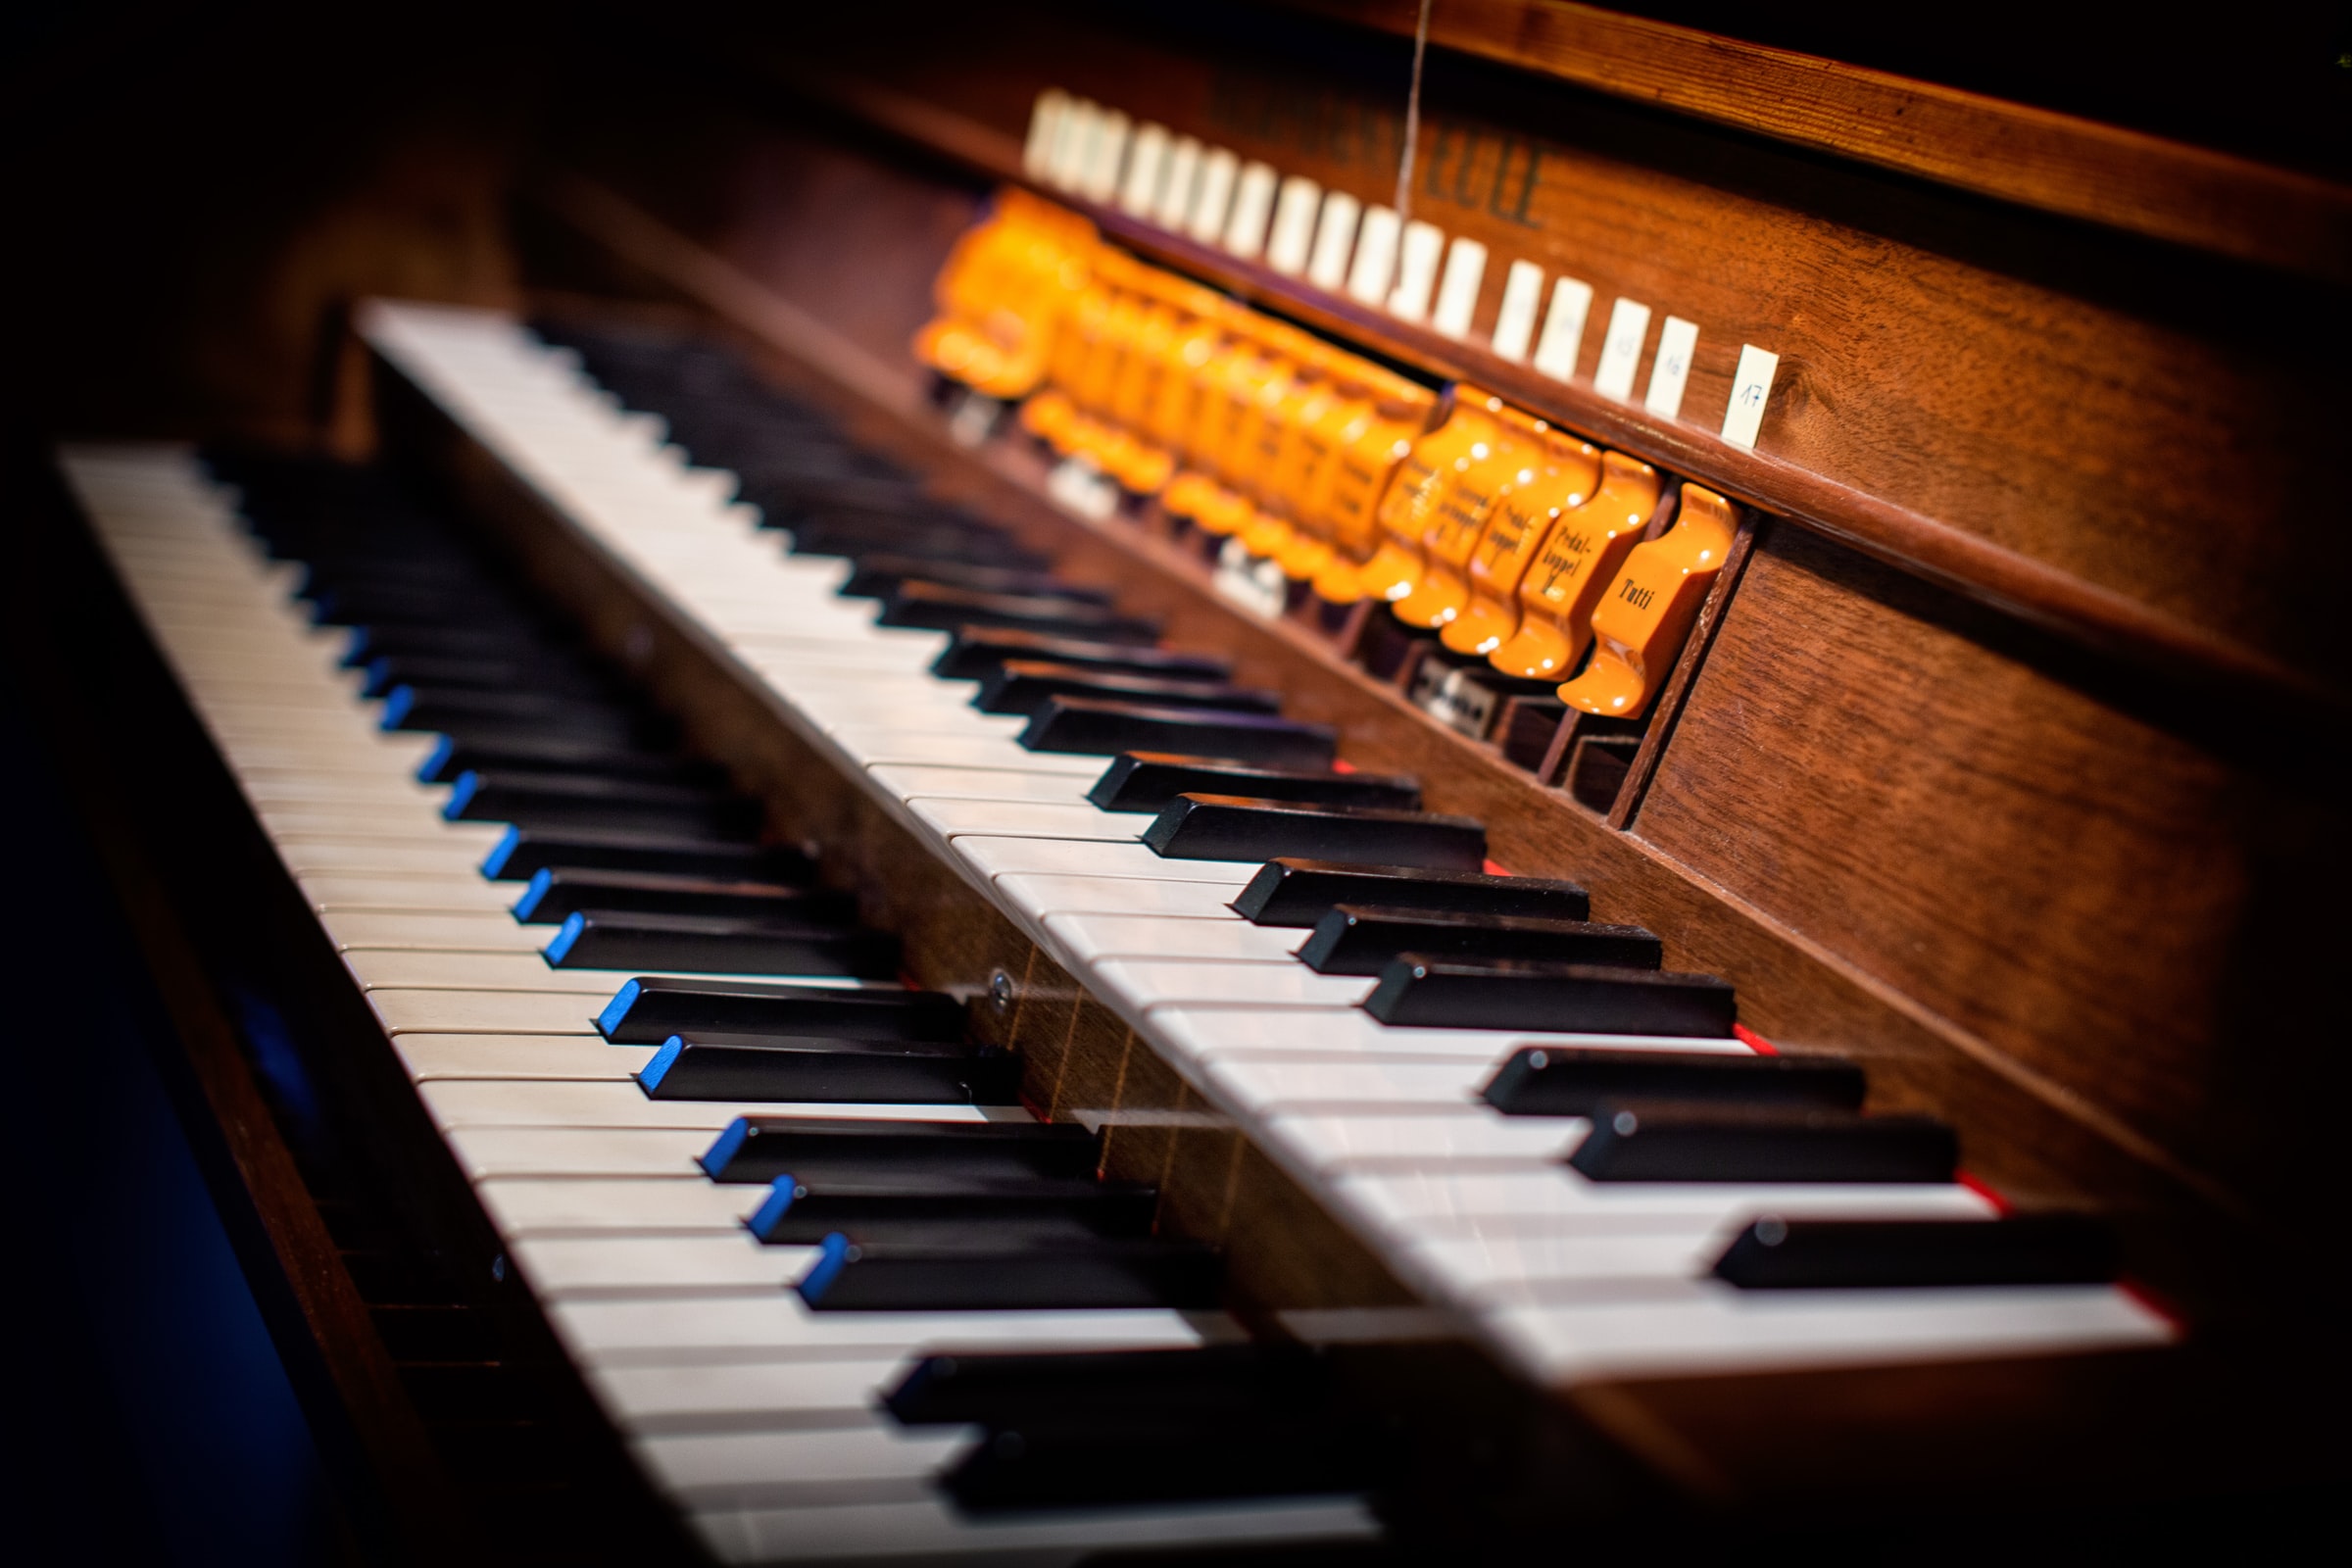 Organ playing